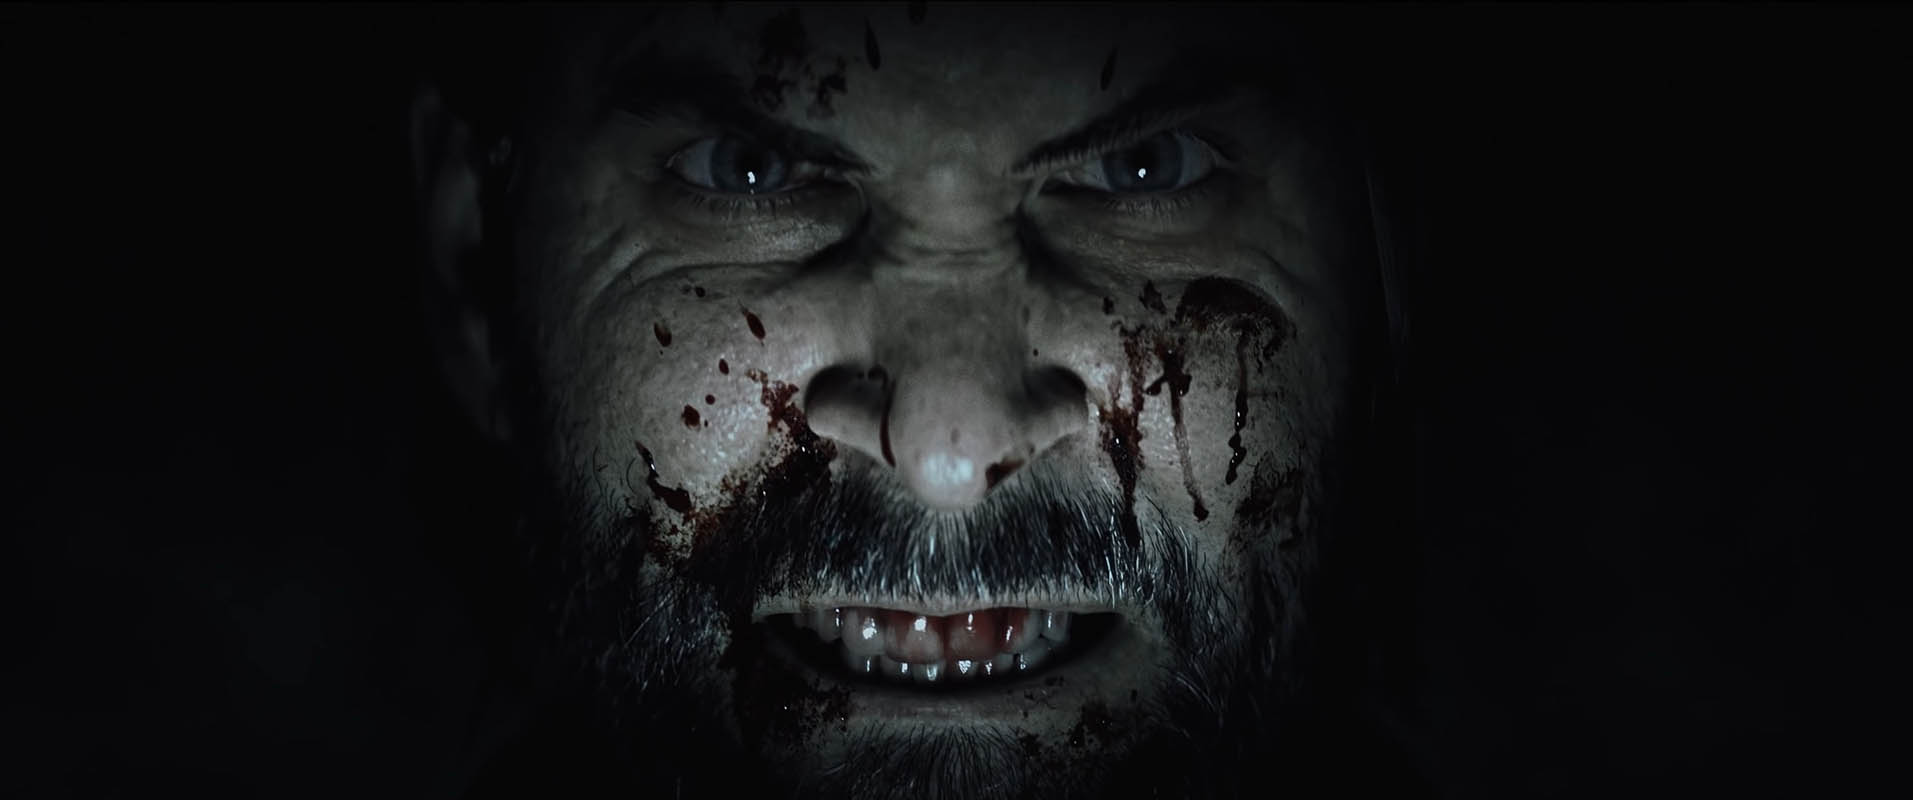 Слух: Alan Wake 2 – хоррор от авторов Max Payne выйдет в октябре